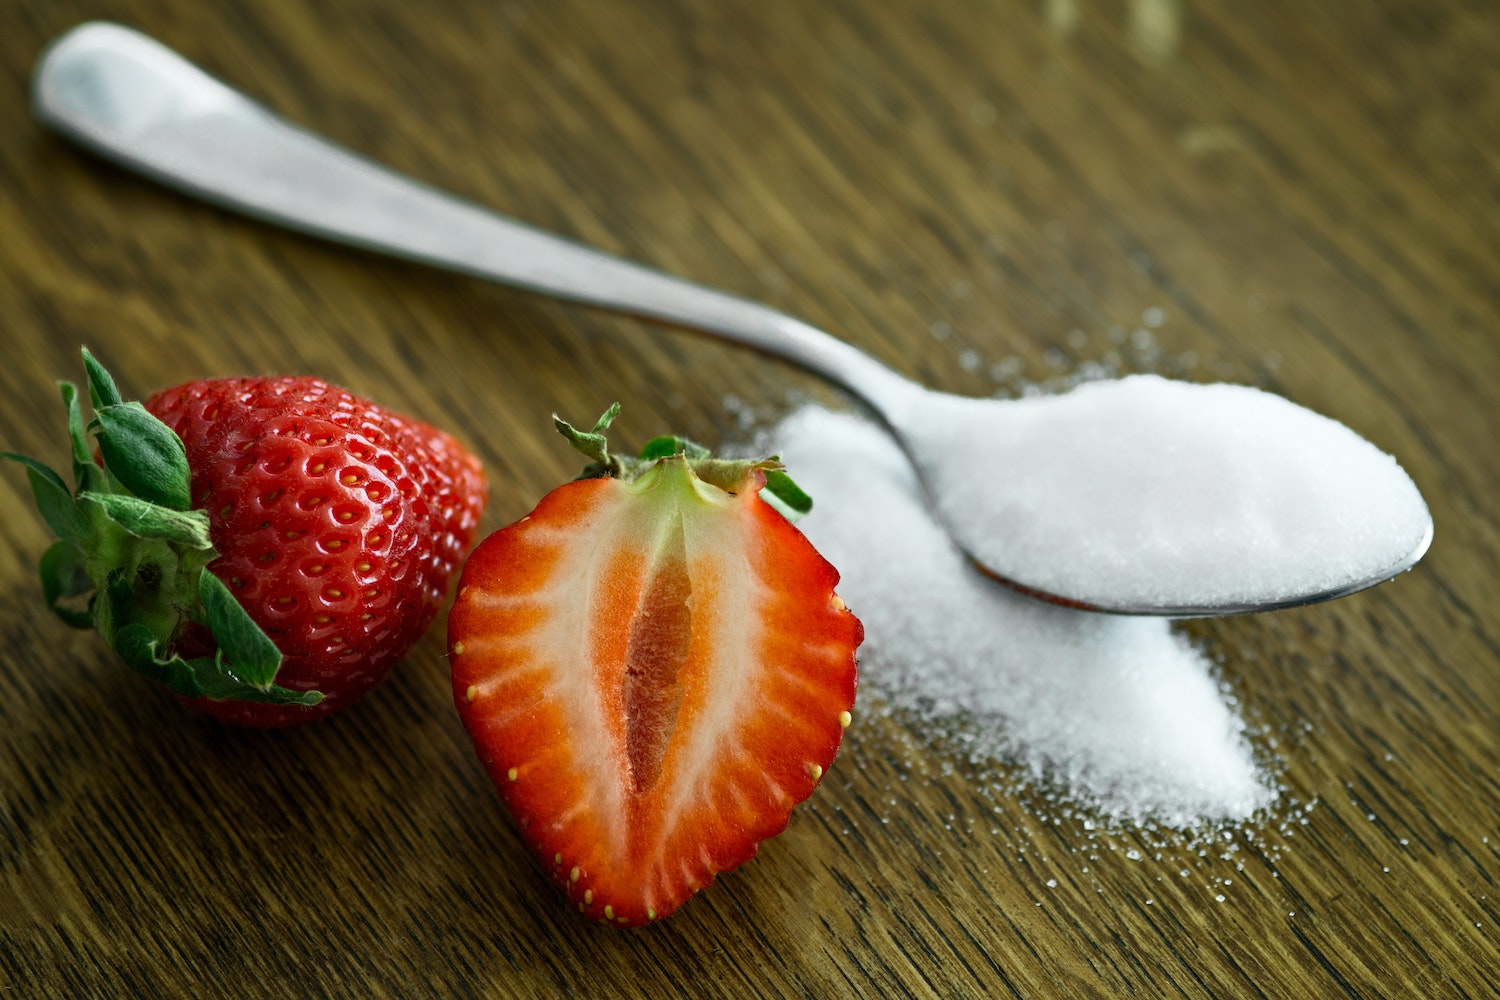 ridurre il consumo di zucchero